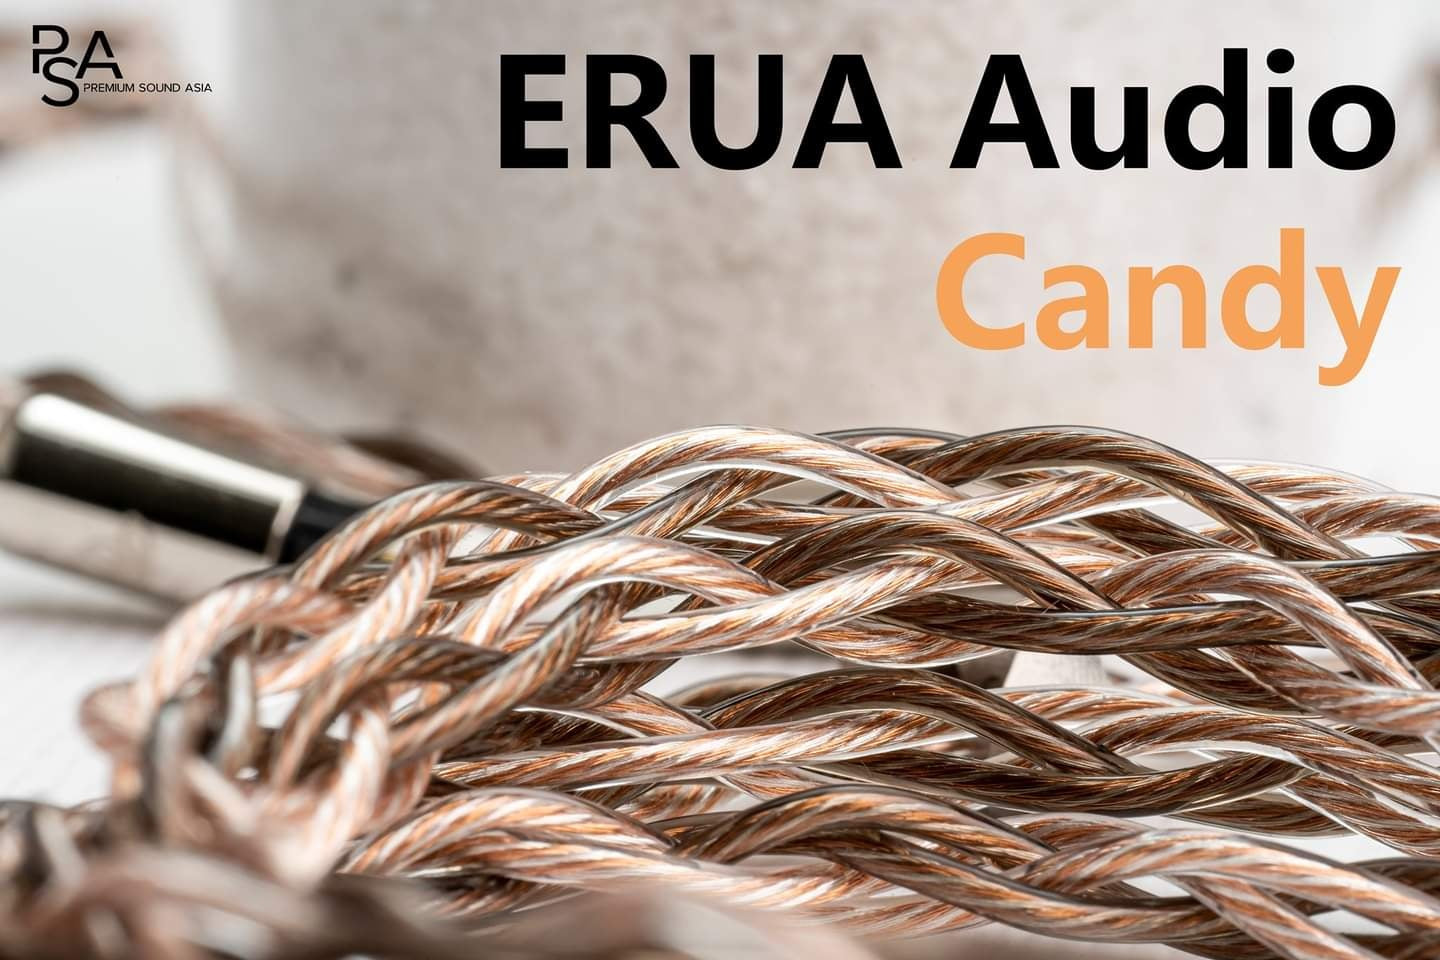 ERUA Audio CANDY